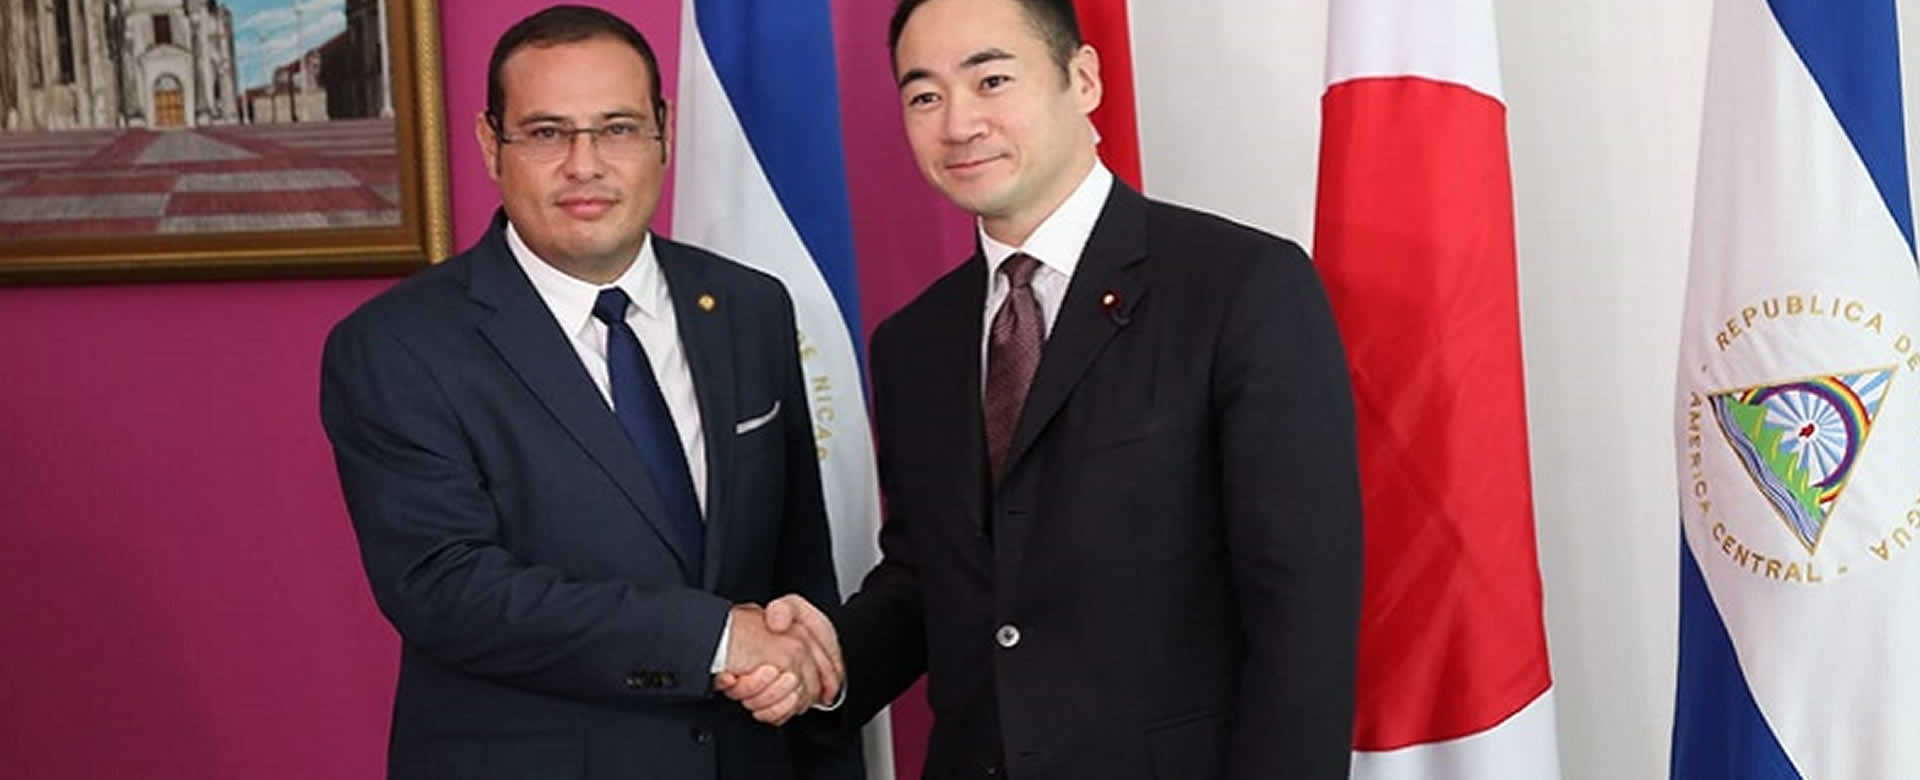 Nicaragua y Japón estrechan sus relaciones de amistad y cooperación